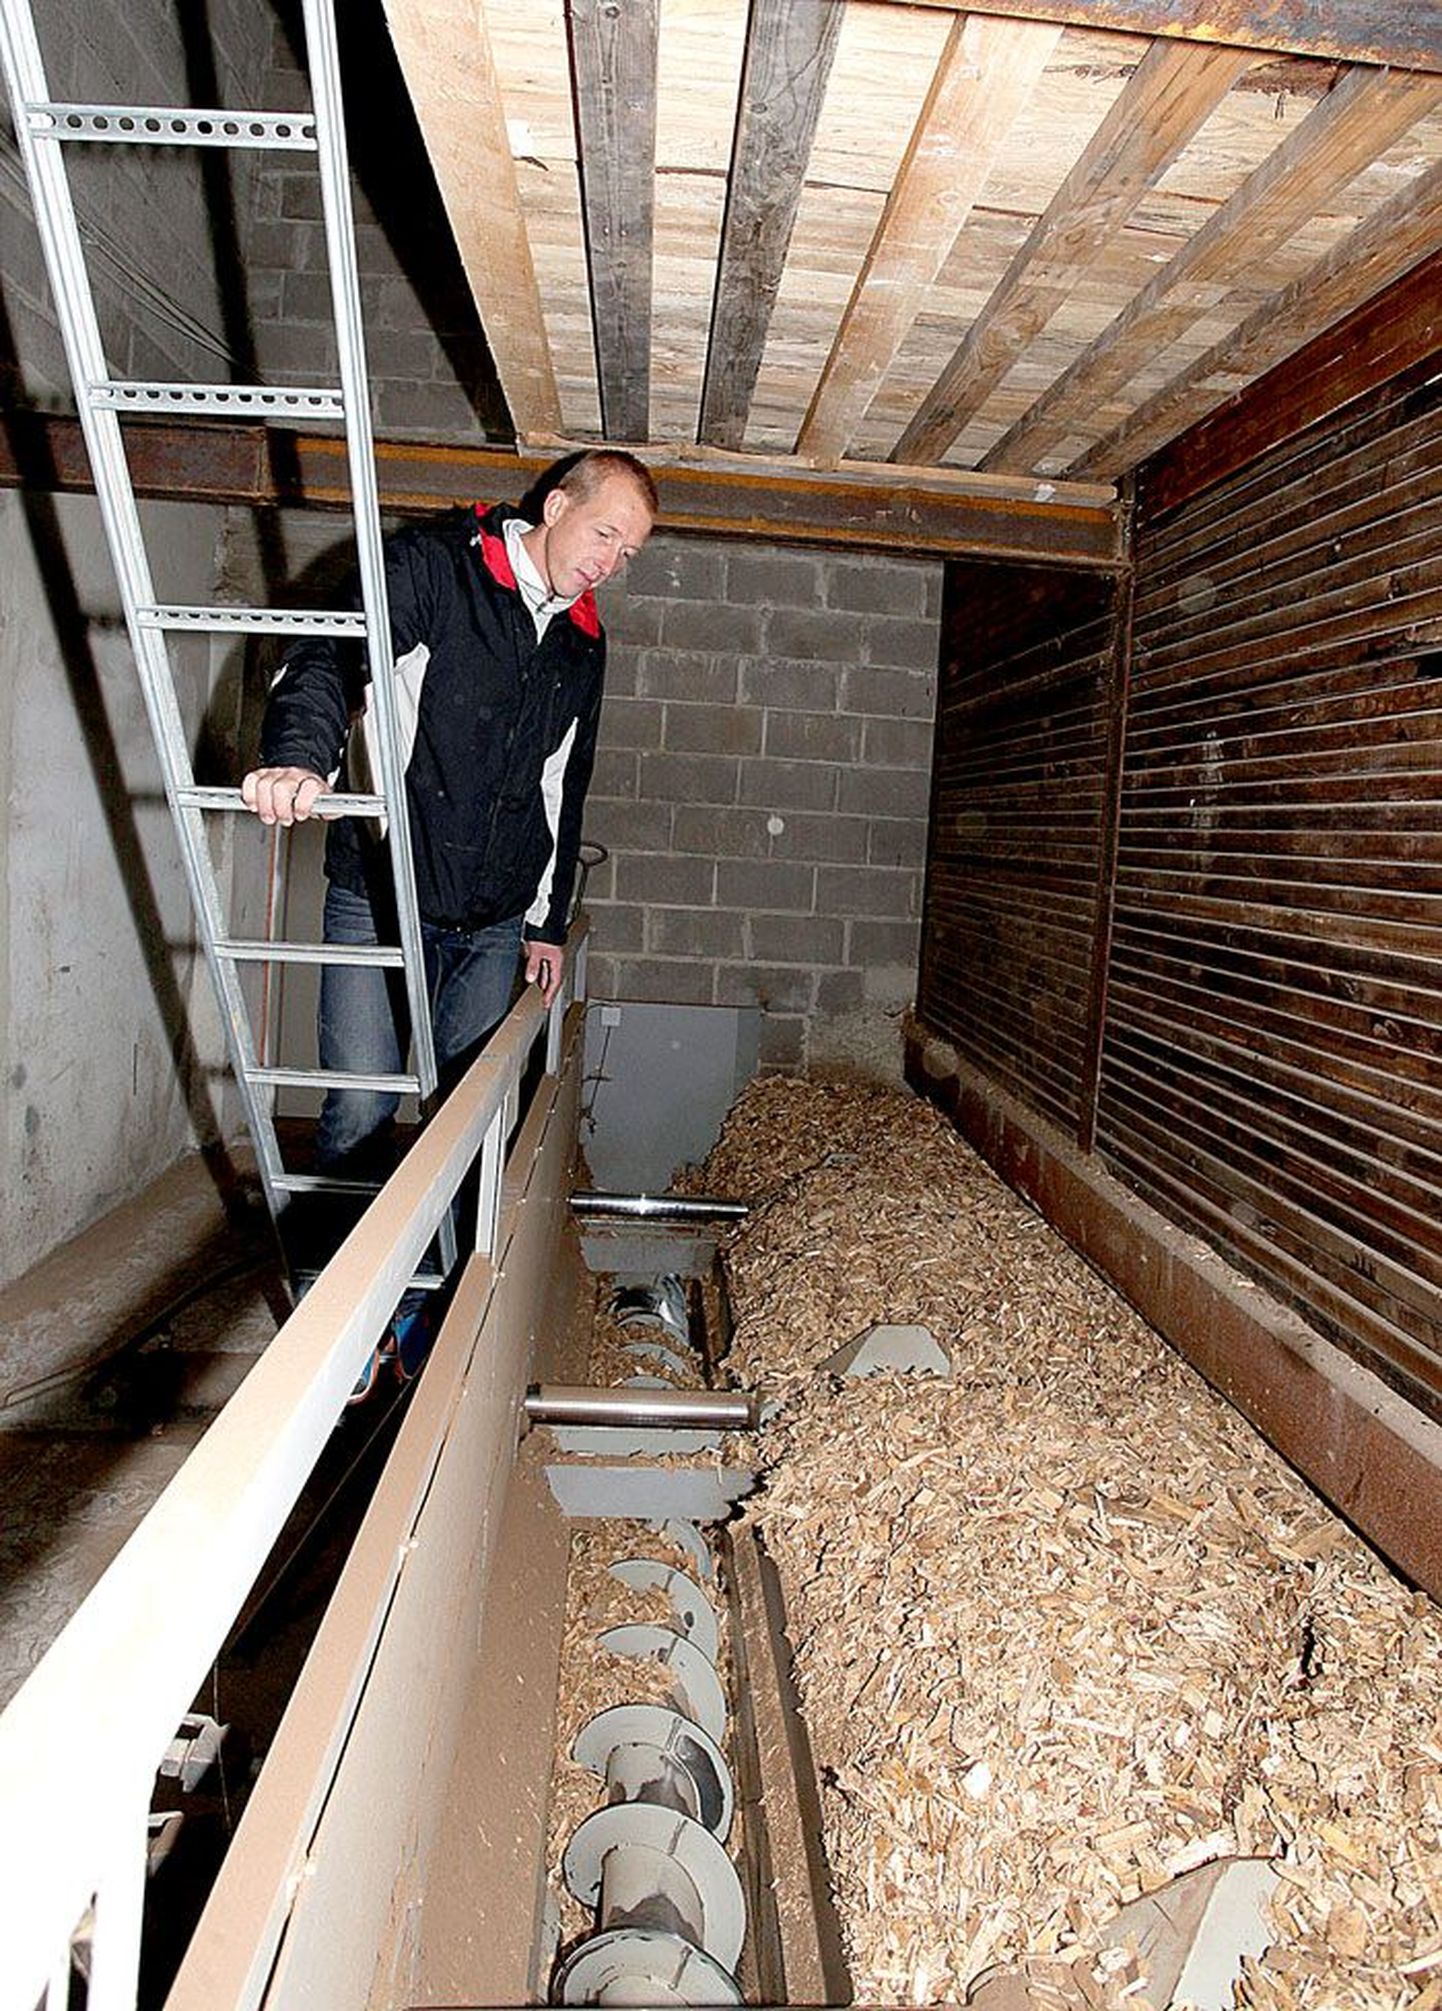 Tabivere Soojuse juht Rannar Raantse näitab hüdraulikaruumi, kust tigutransportöör hakkpuidu katlaruumi veab.